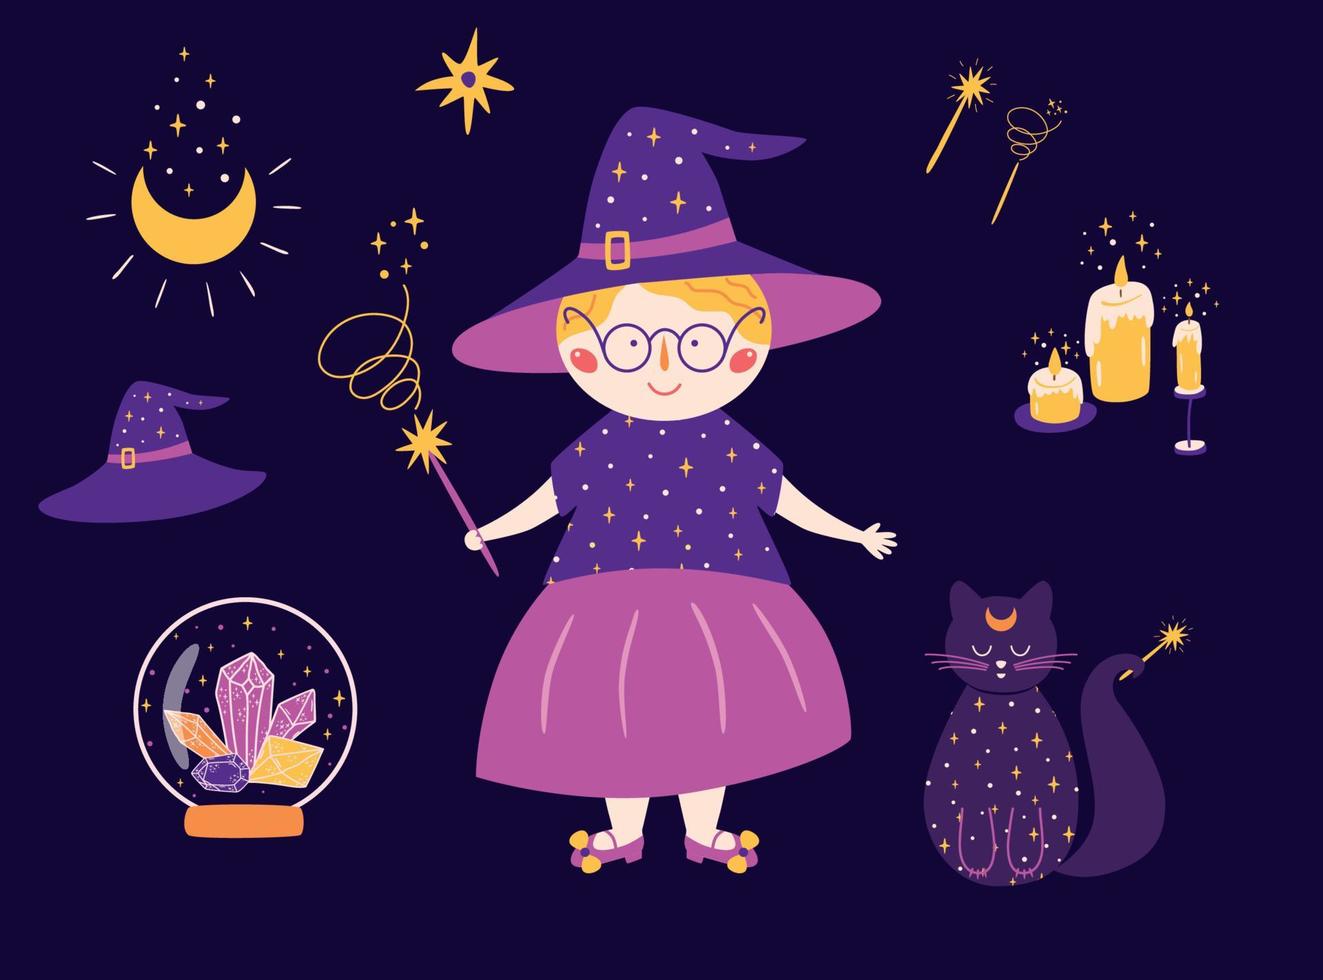 magi uppsättning ikon. häxa magi katt, kristaller, hatt, måne, trollstav, ljus. söt halloween element. violett magisk klämma konst trolldom isolerat symboler. hand dragen klotter skiss trollkarl vektor illustration.